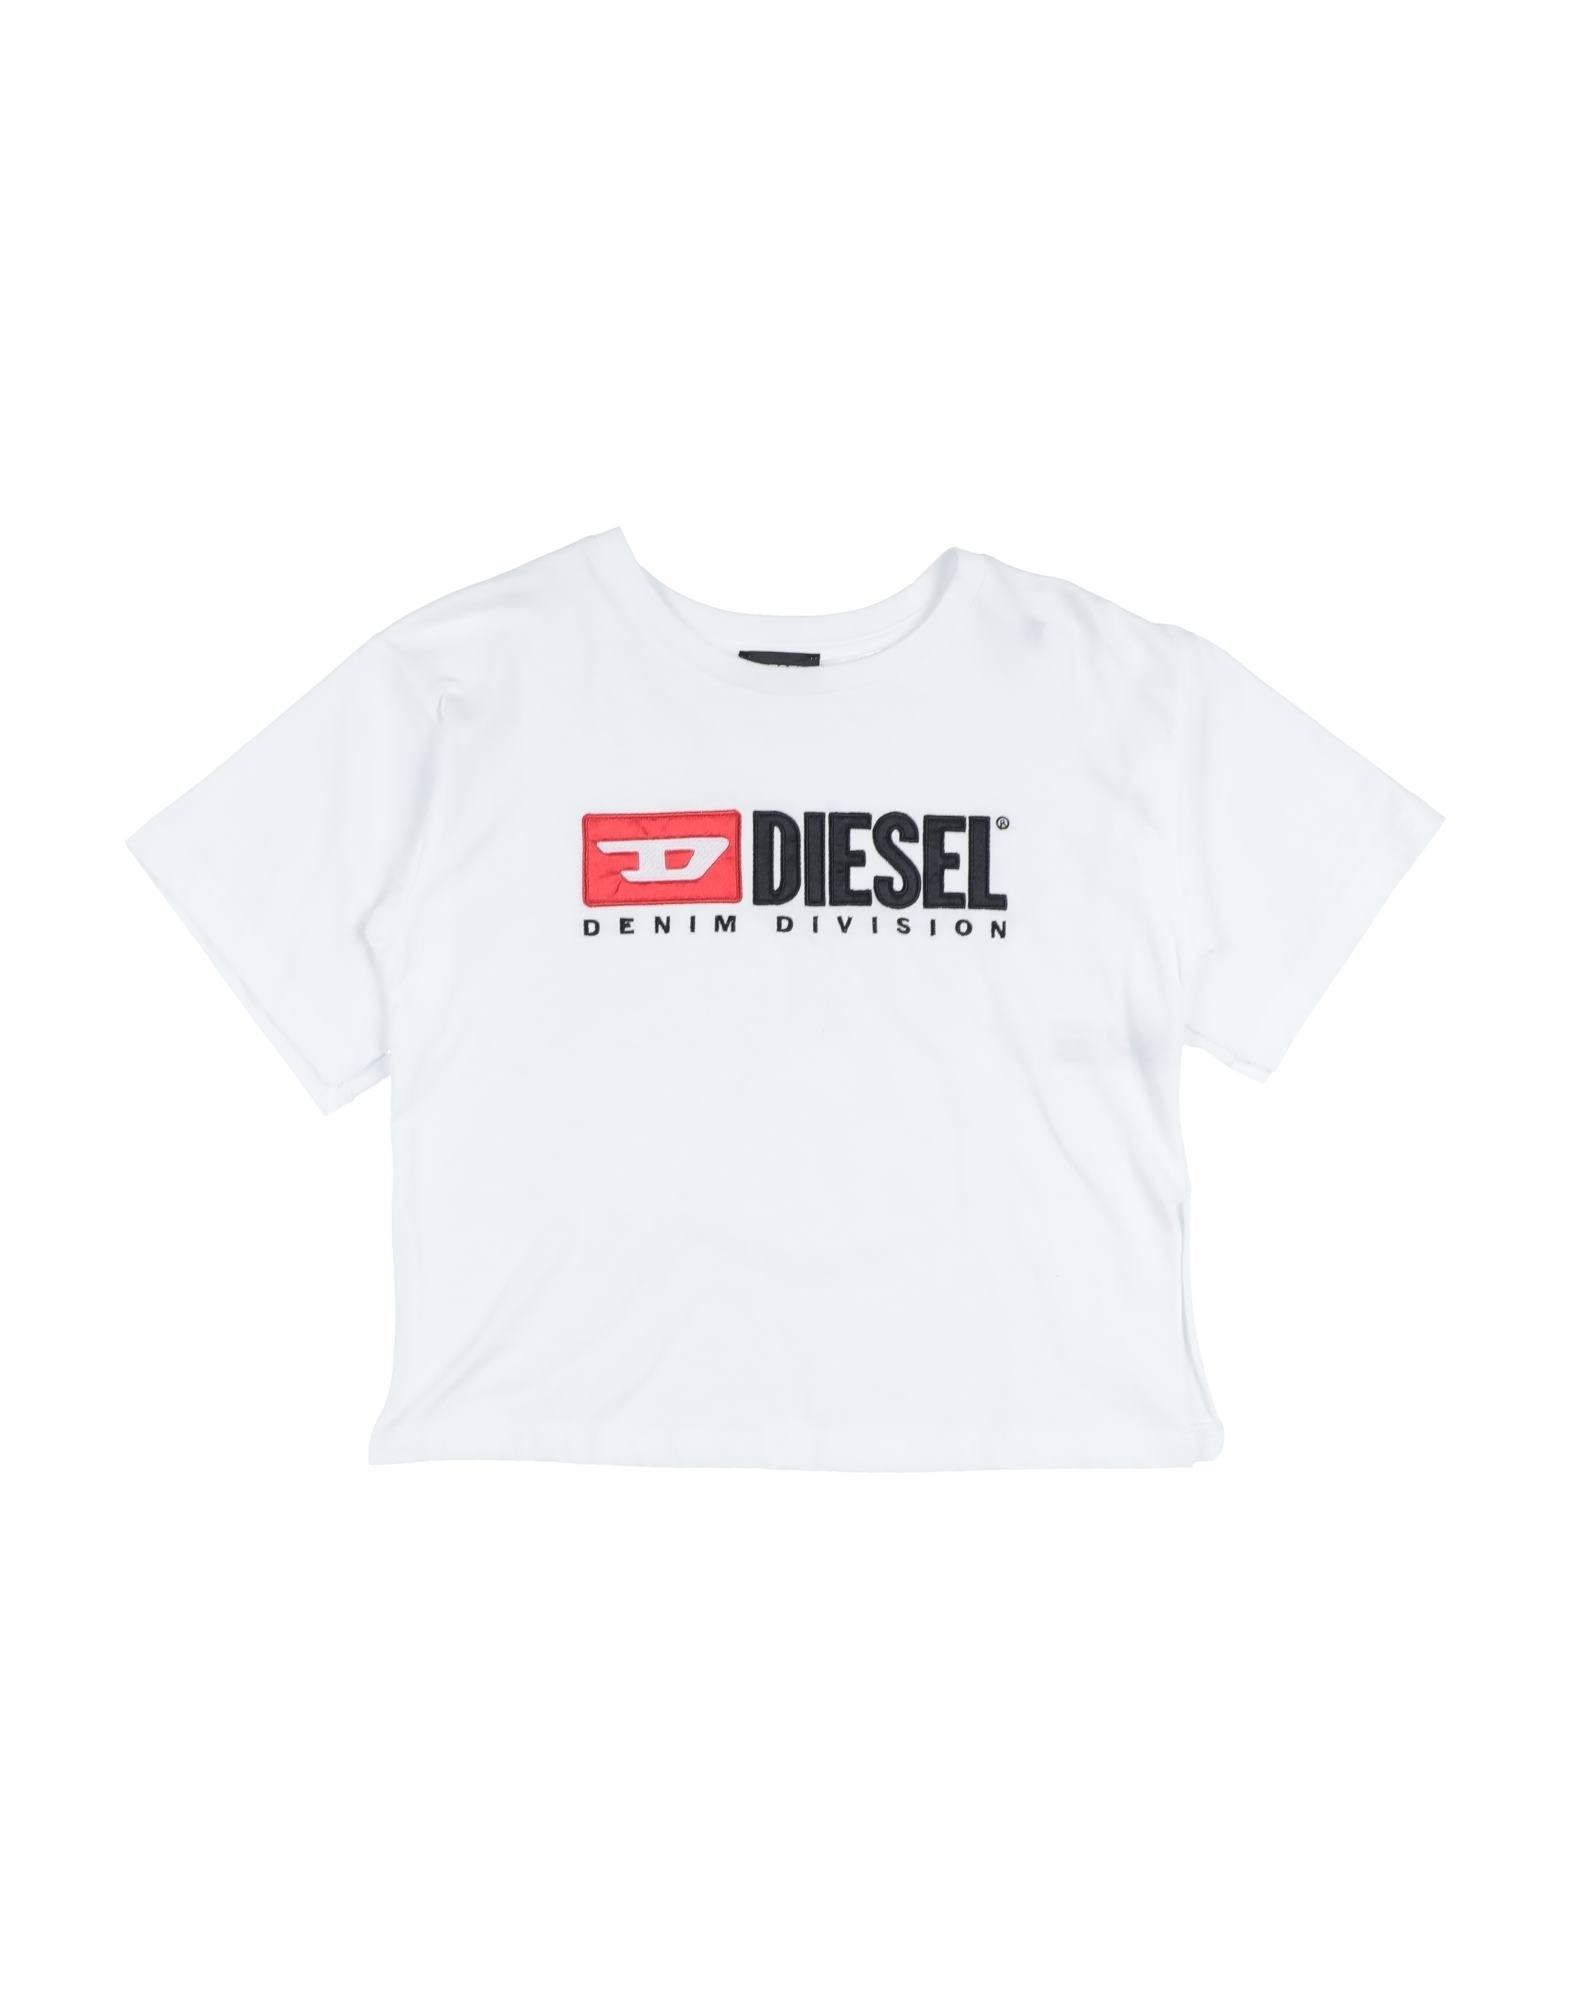 Diesel Kids' T-shirts In White